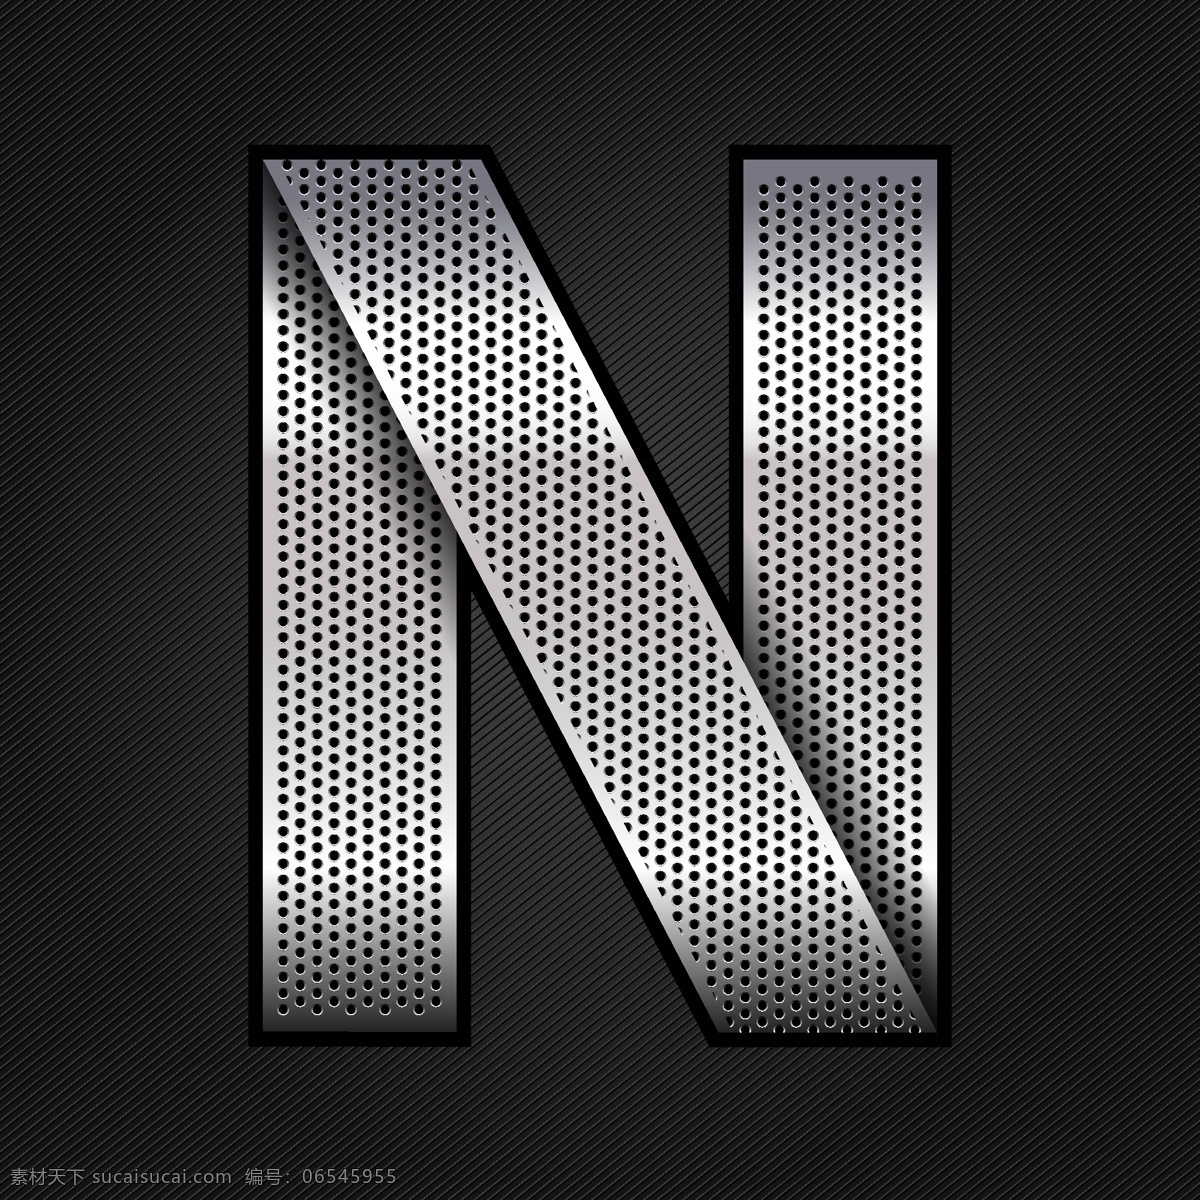 金属字母n 金属字母 n 素材设计 立体 灰色 书画文字 文化艺术 矢量素材 黑色